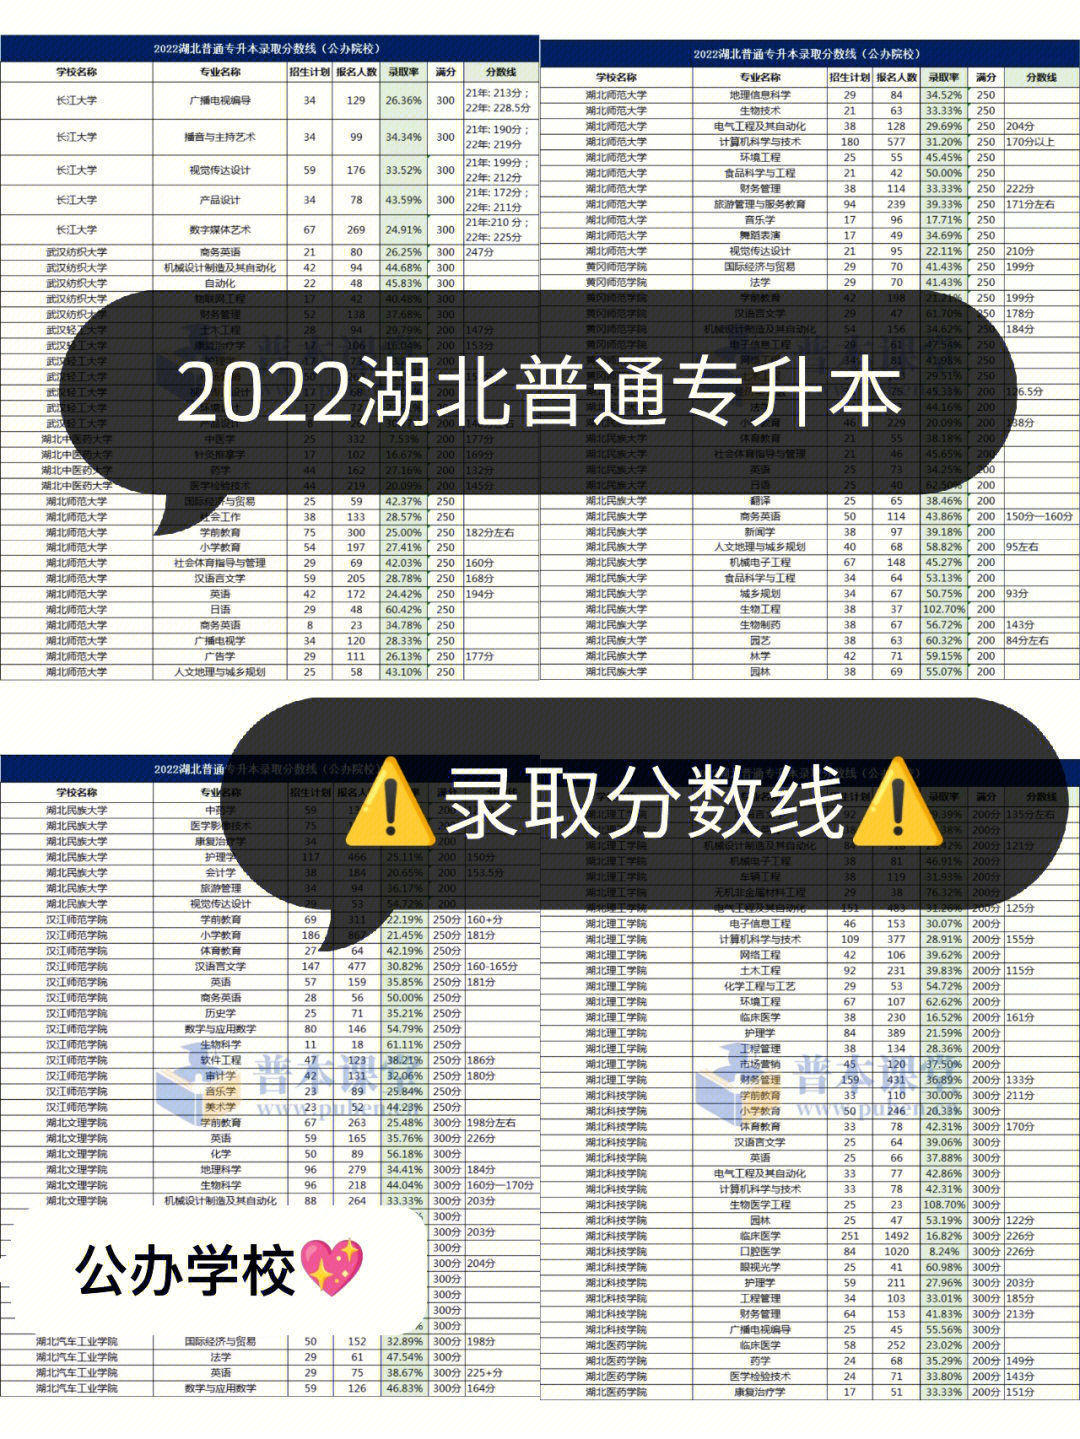 7215说明:2020年,只有3所院校公布分数线(江汉大学,湖北师范大学